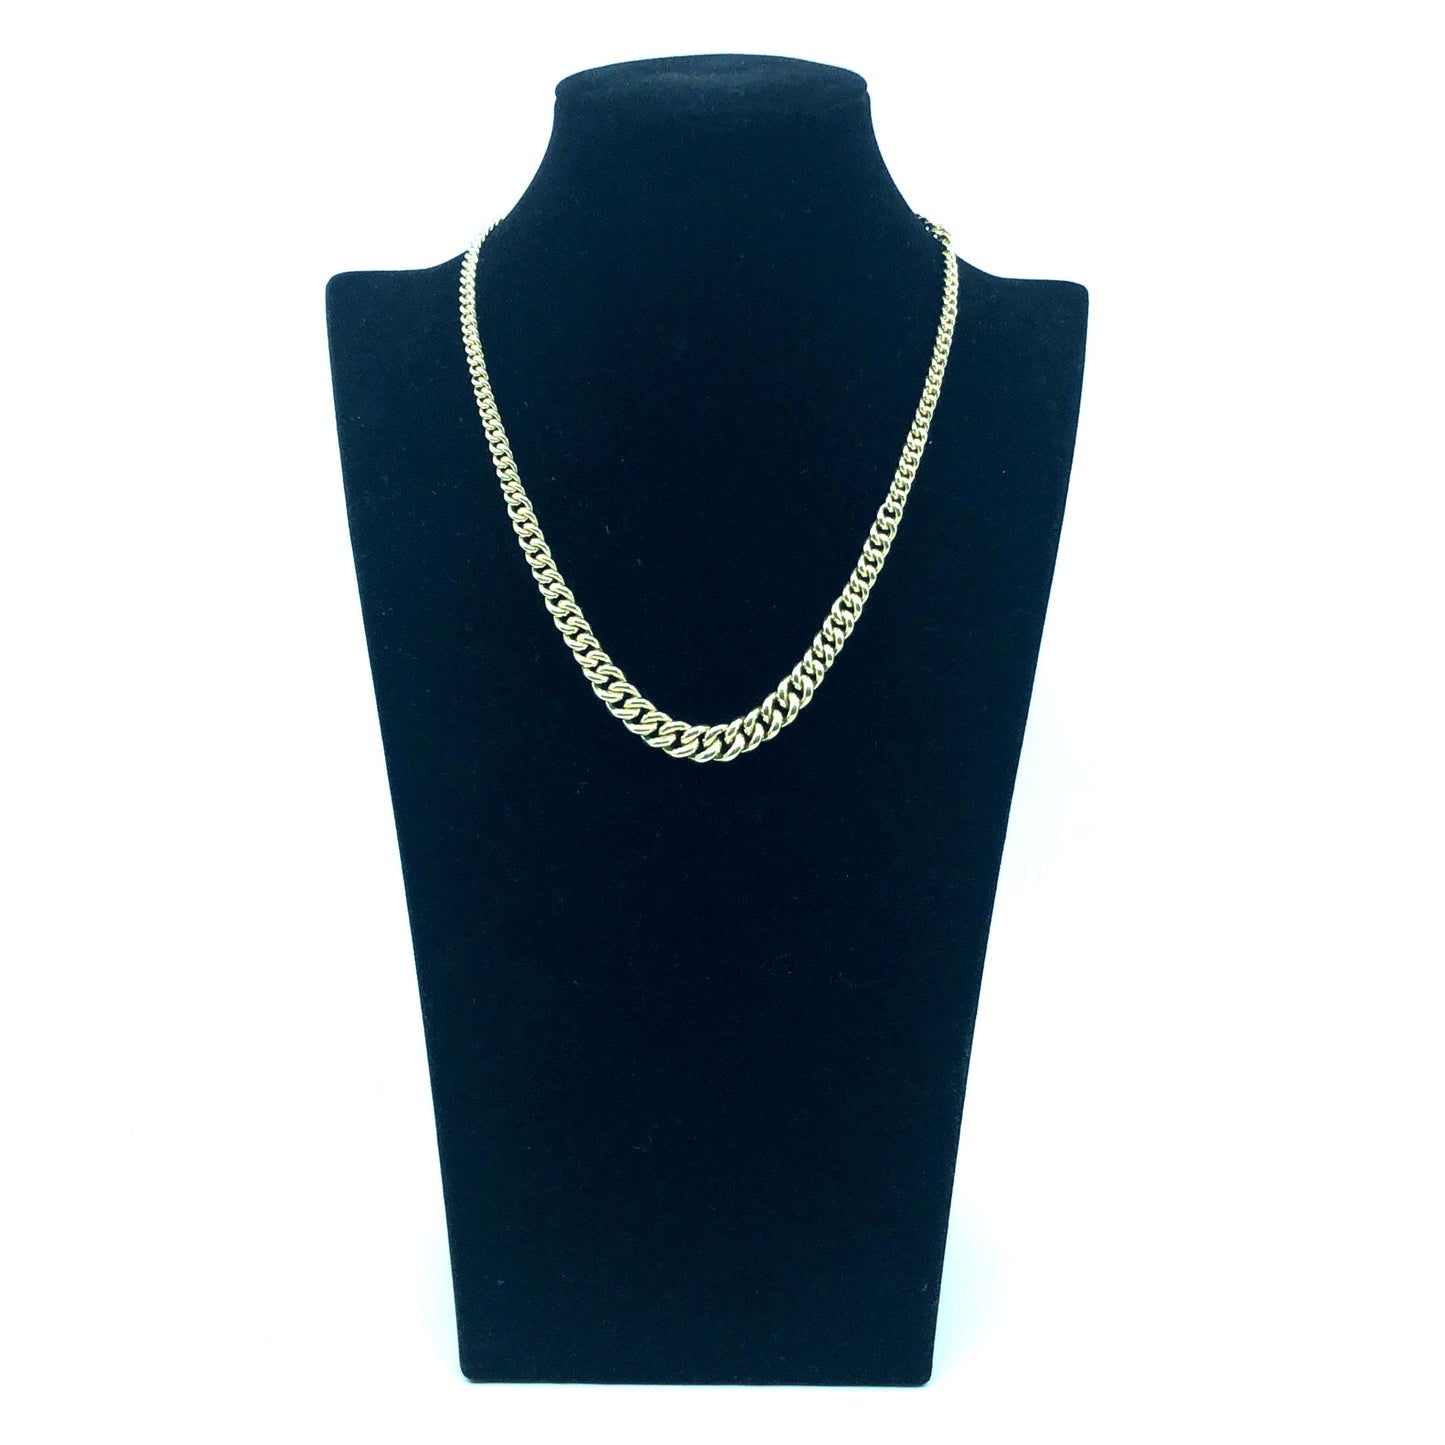 Halskette Collier Gold 585 / 14k, wird an der Vorderseite breiter